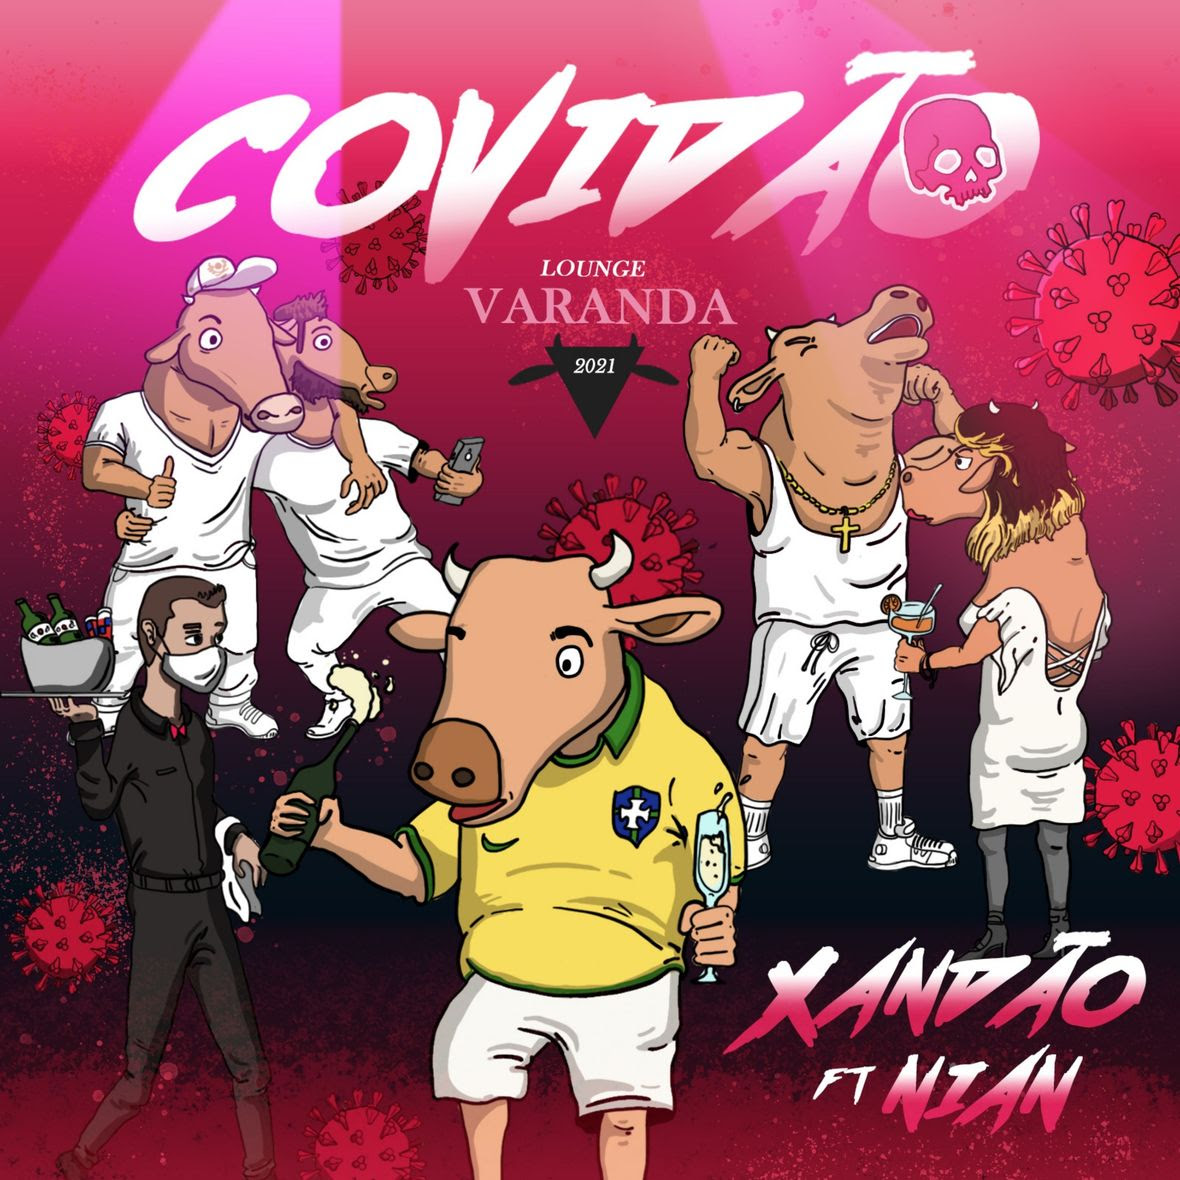 Covidao - Xandao feat Nian - CAPA